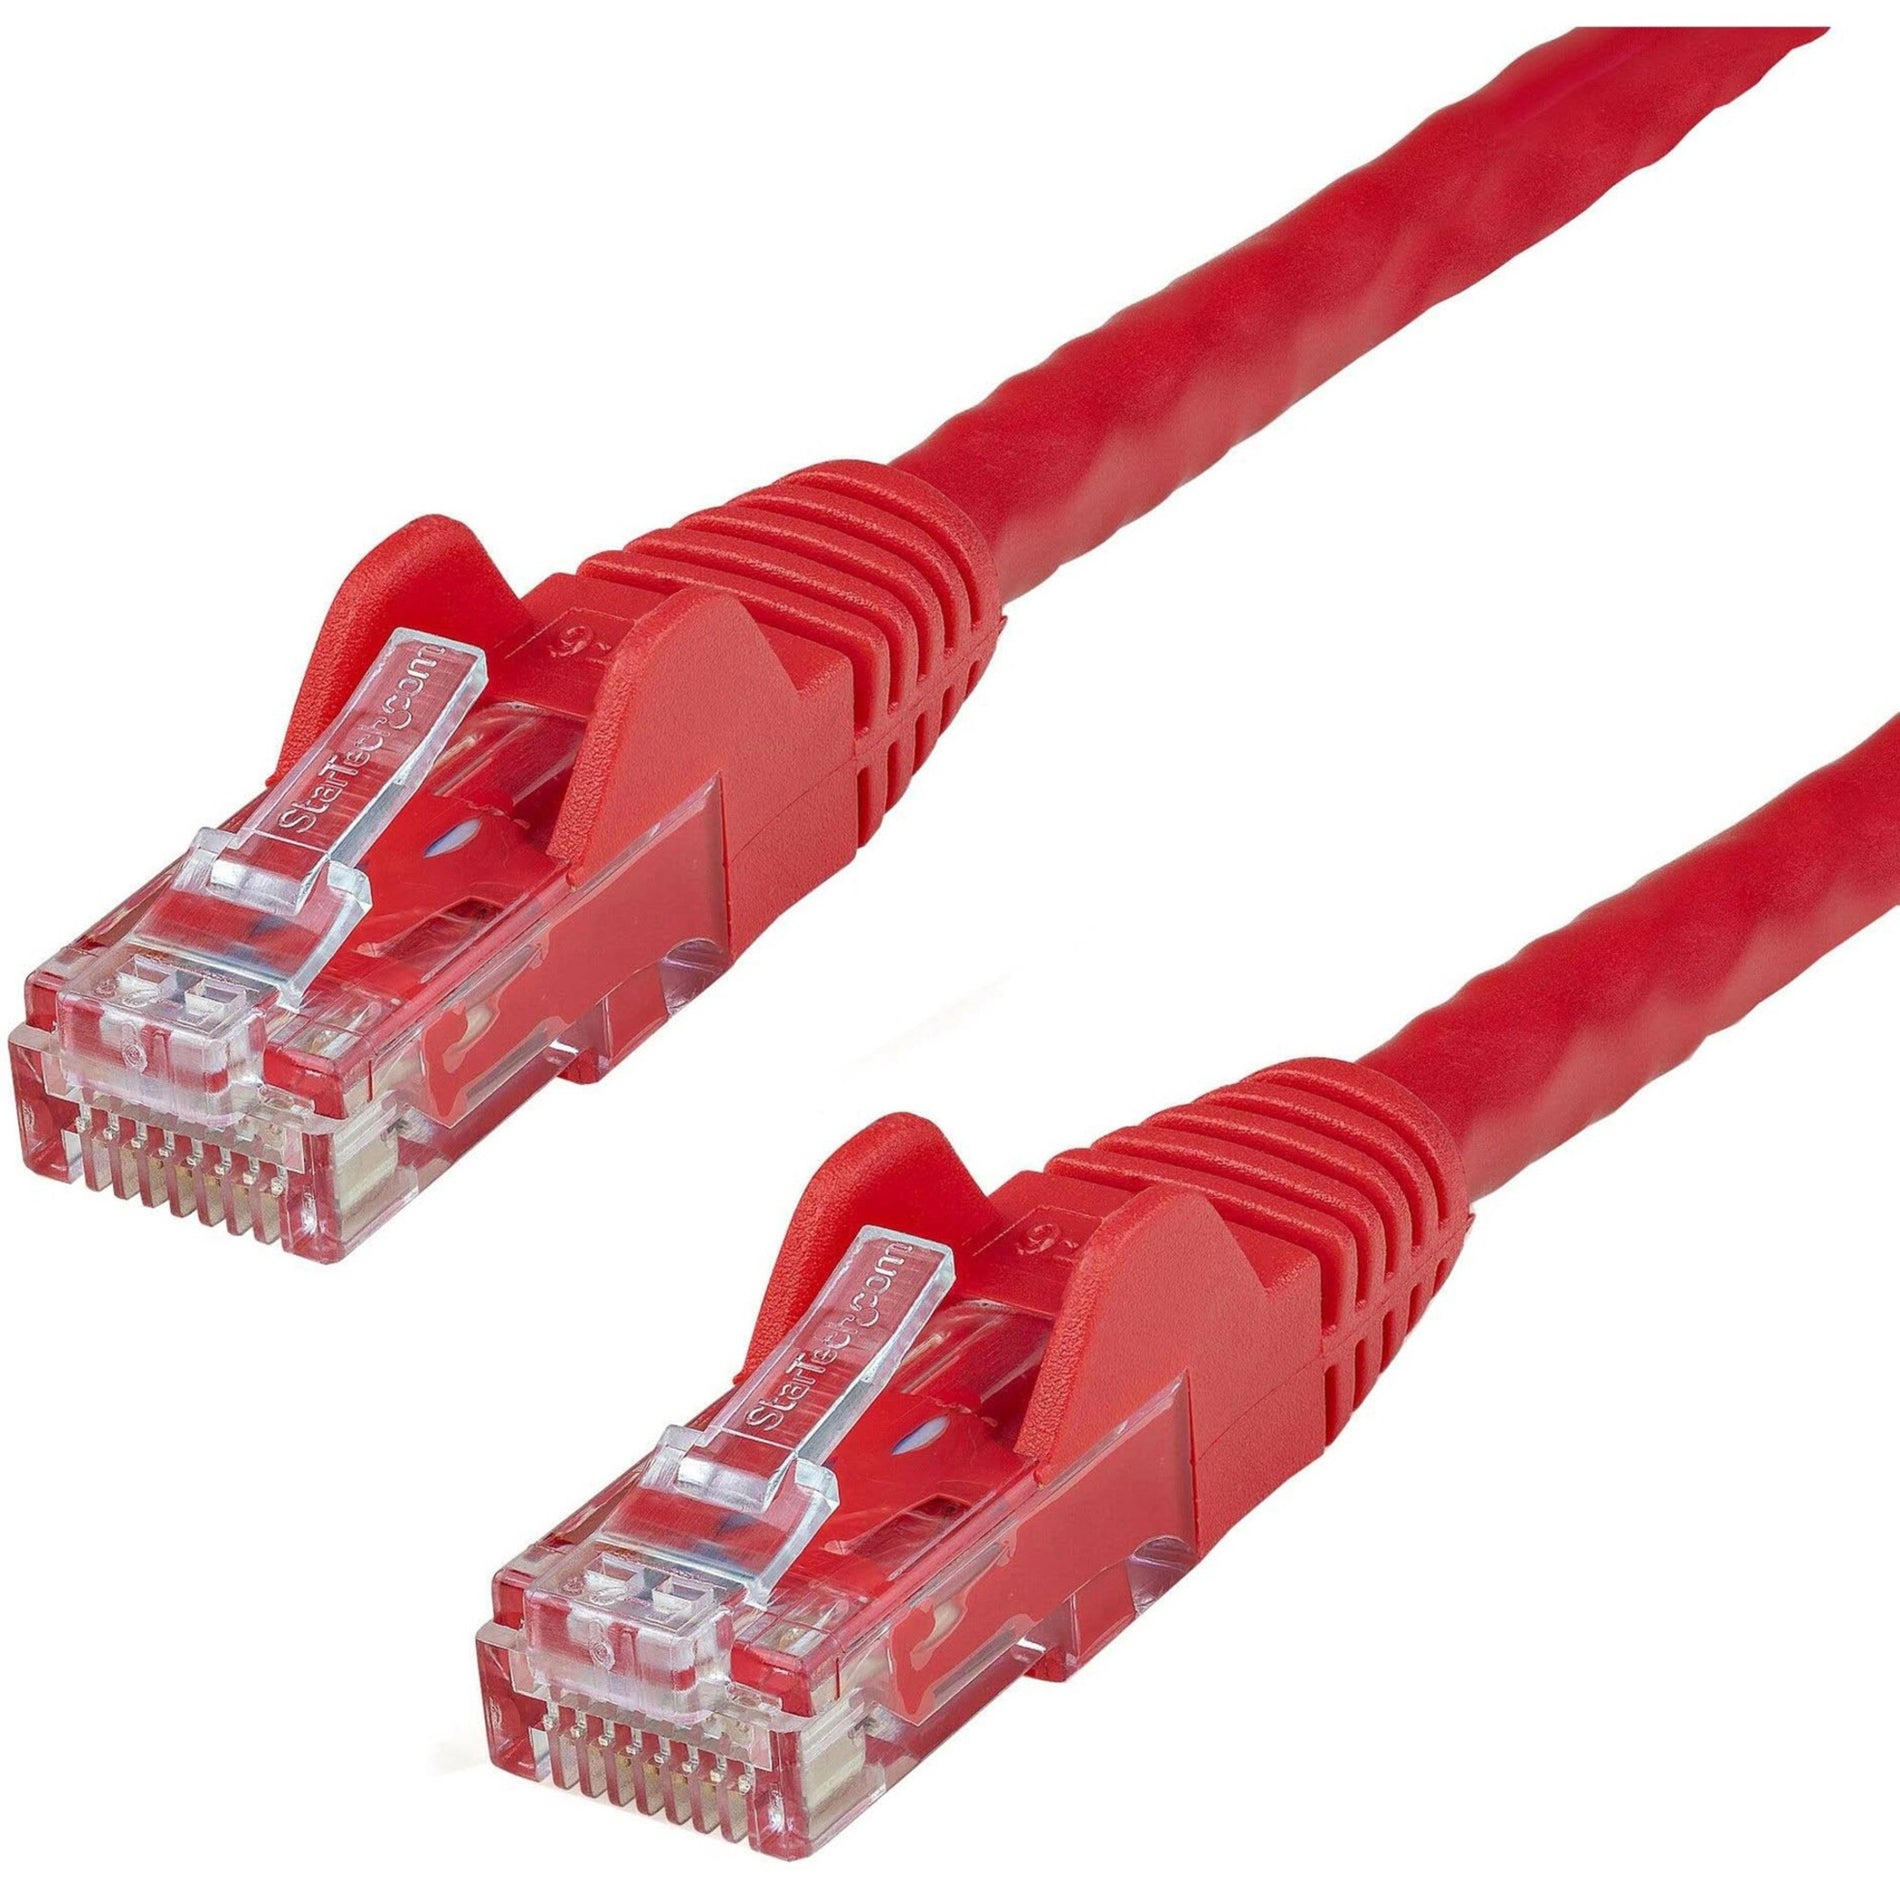 星速科技 N6PATCH50RD 50 英尺红色无卡扣 Cat6 UTP 补丁电缆 - ETL 验证，终身保修，10 Gbit/s 数据传输速率 星速科技 星速科技